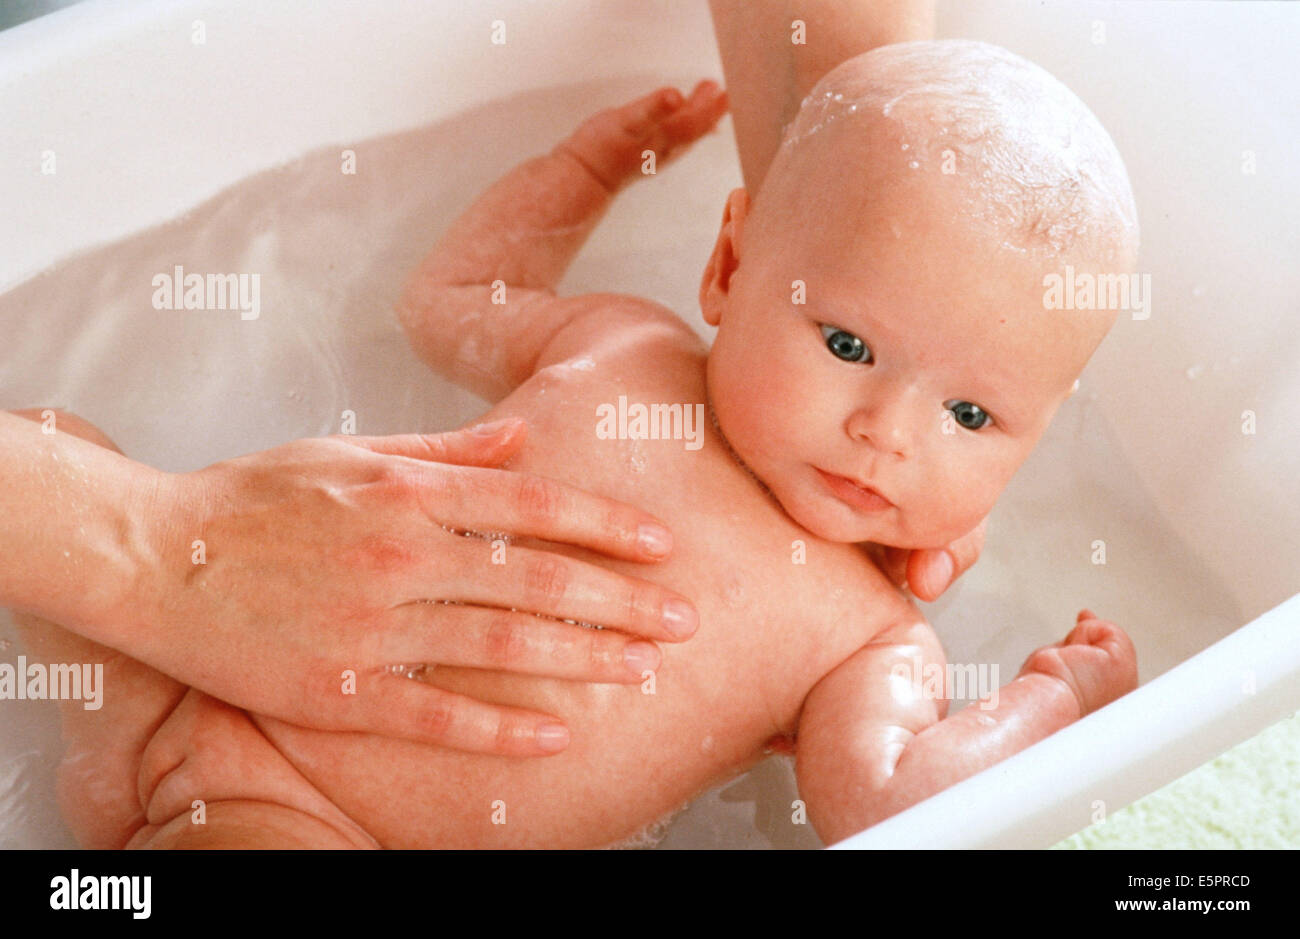 bathing baby girl